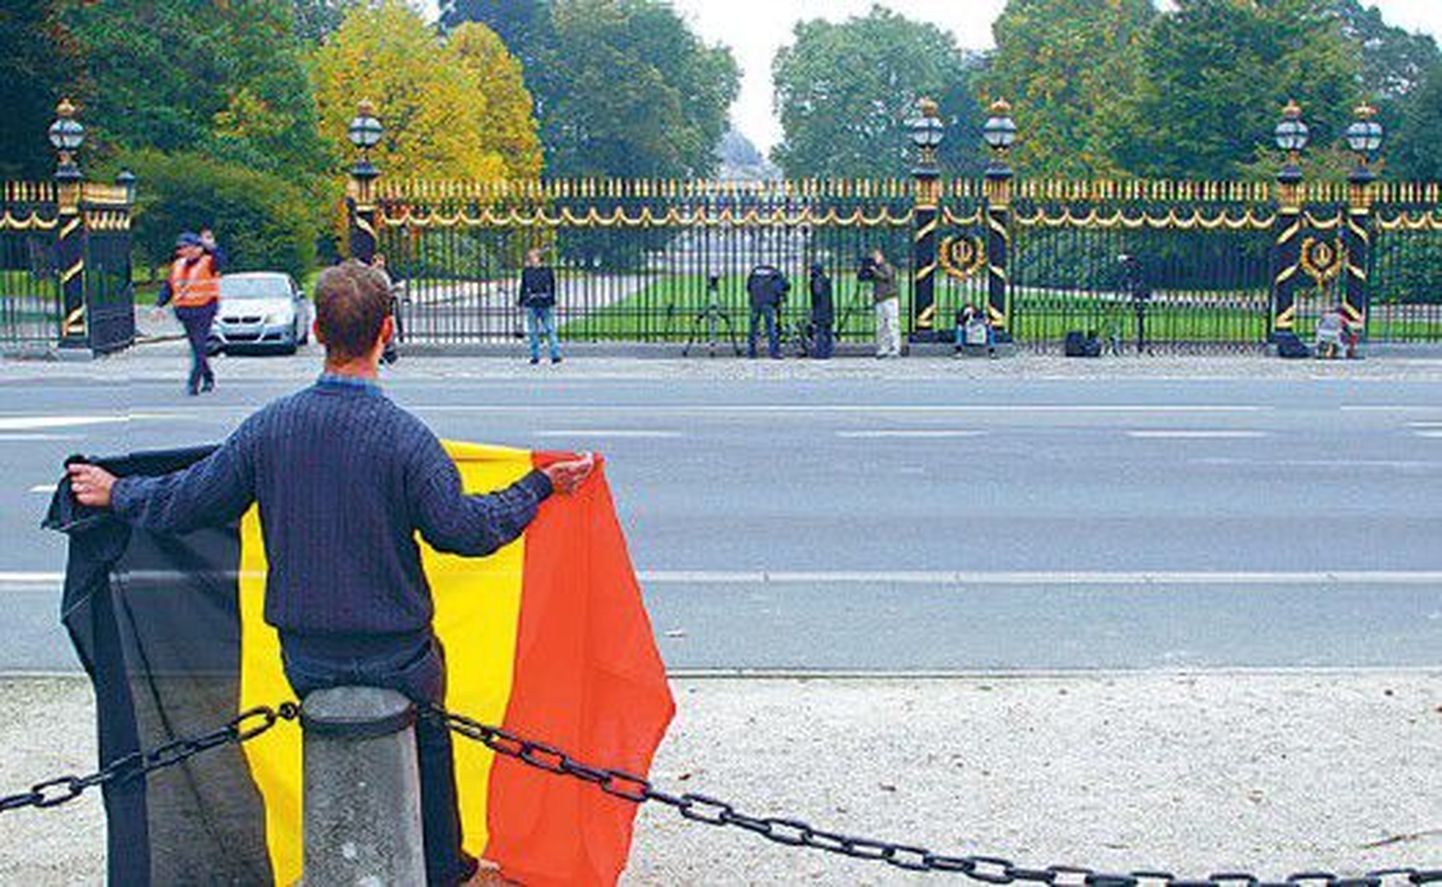 Мужчина, развернувший бельгийский триколор перед королевским дворцом, еще летом ждал действий от правительства, но оно до сих пор не сформировано.